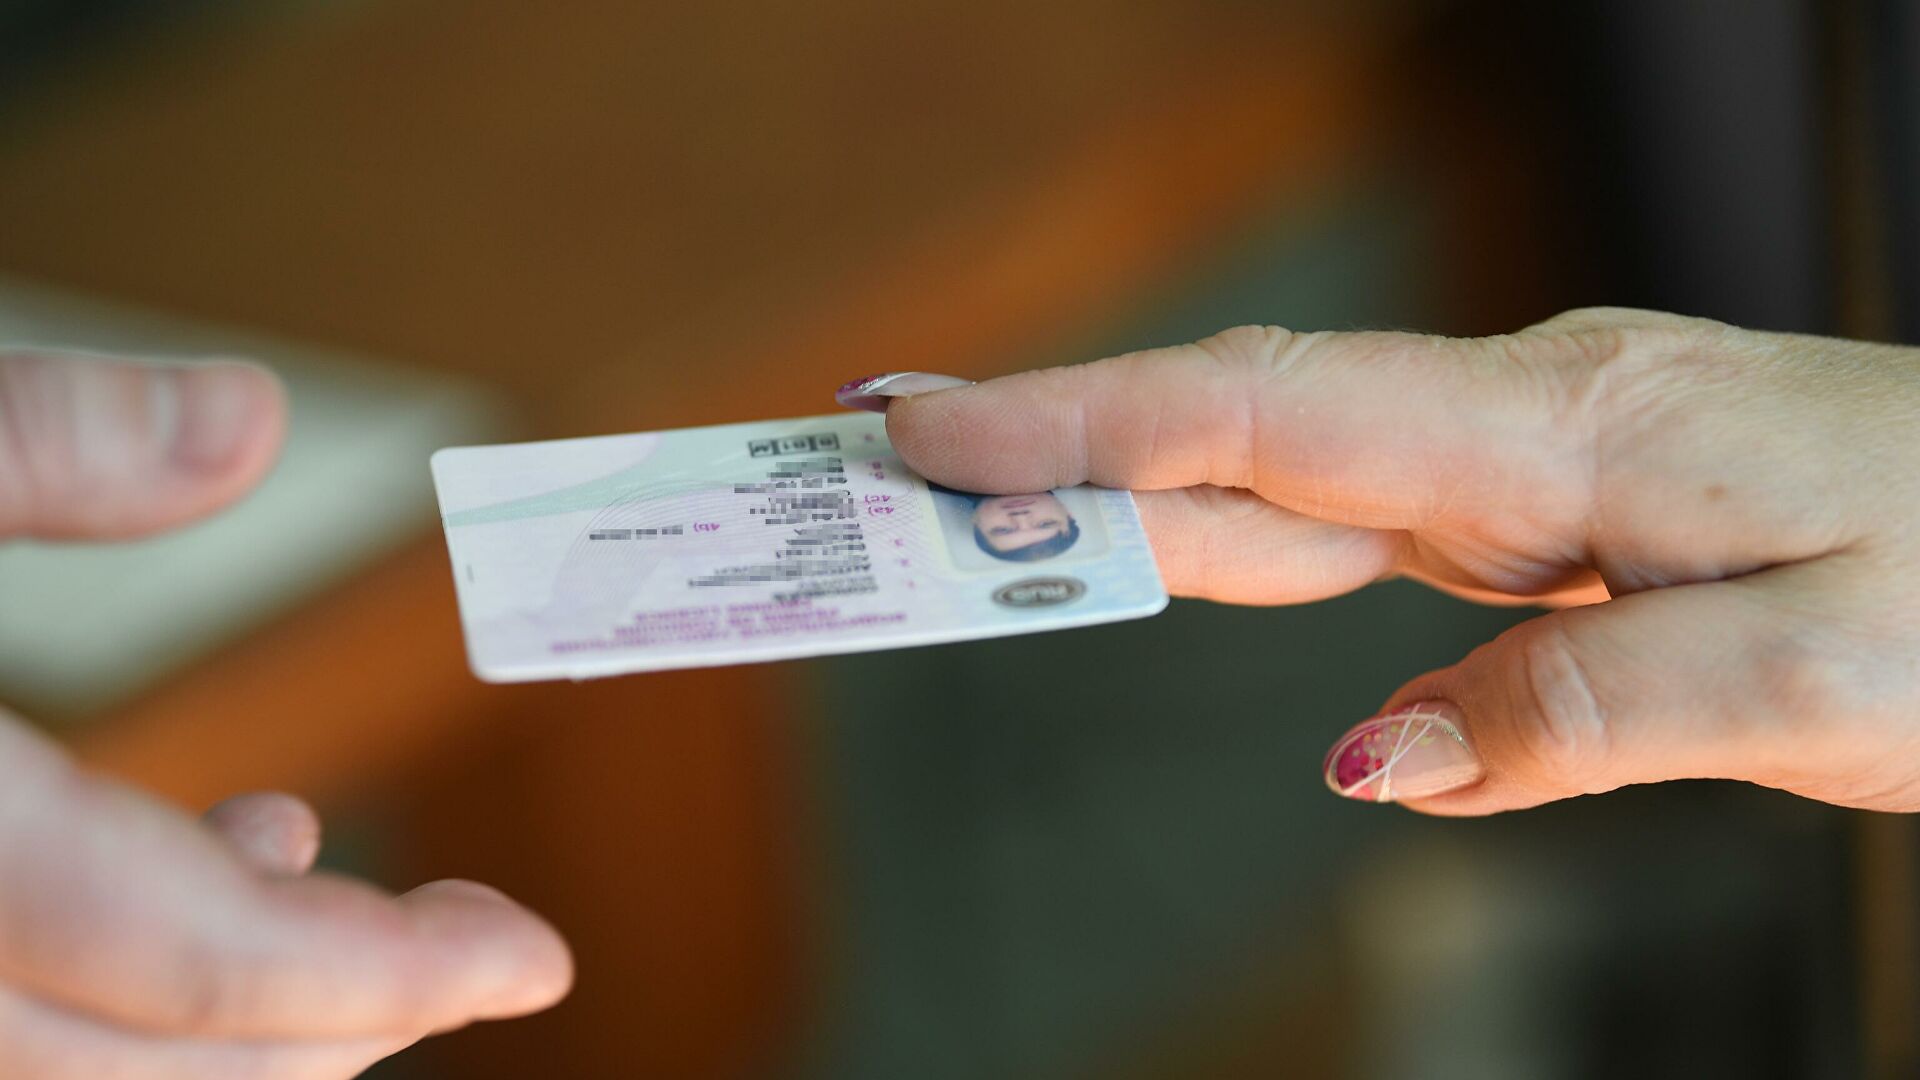 В Марий Эл 55-летнего жителя осудили за подделку водительского удостоверения